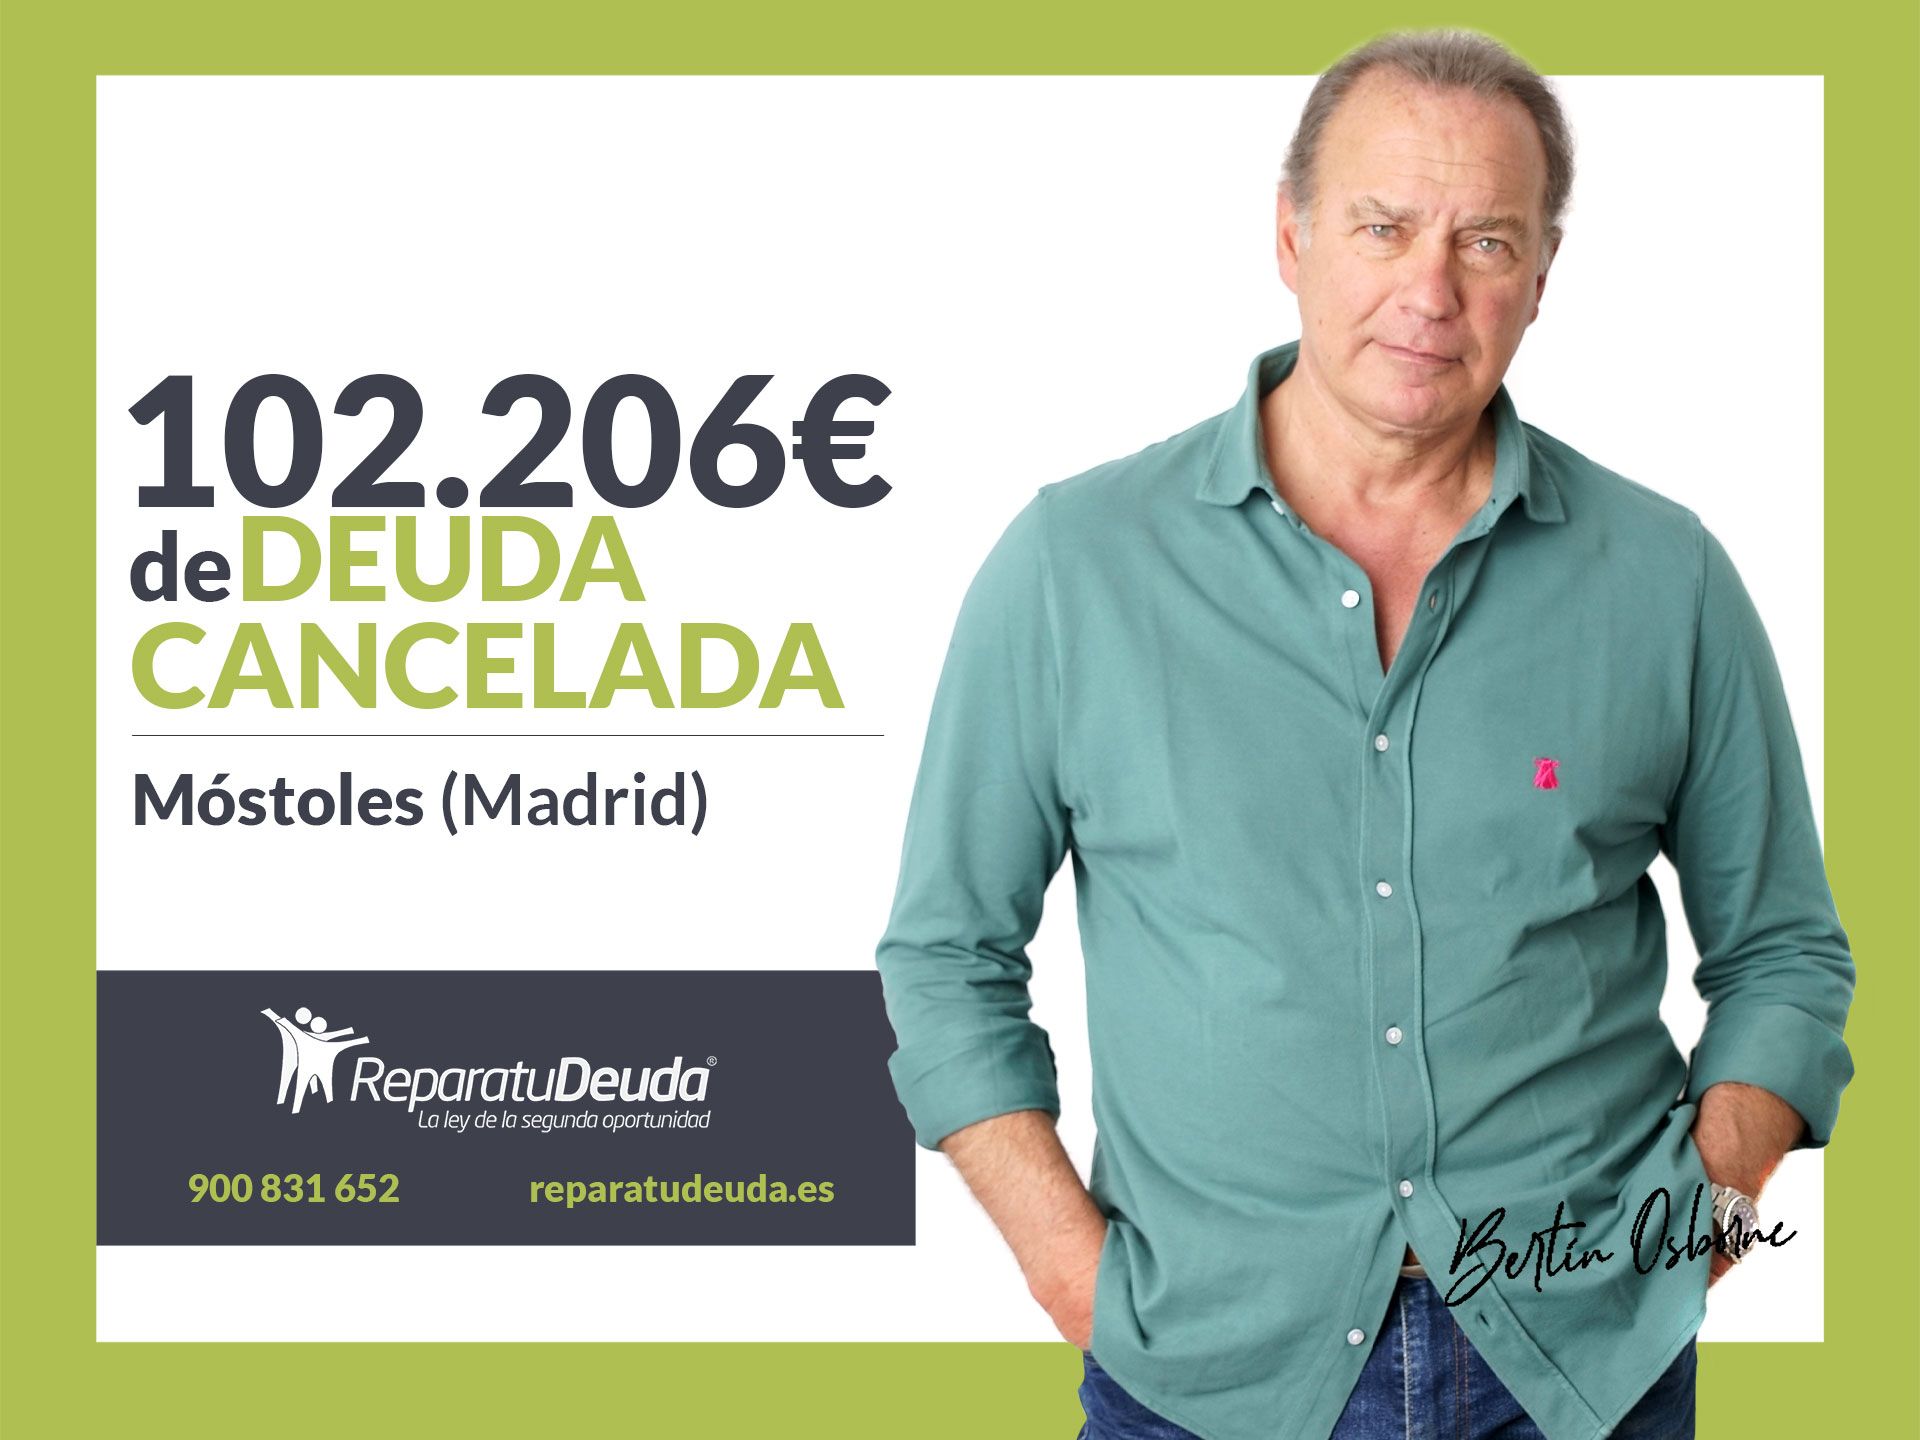 Repara tu Deuda Abogados cancela 102.206€ en Móstoles (Madrid) con la Ley de la Segunda Oportunidad